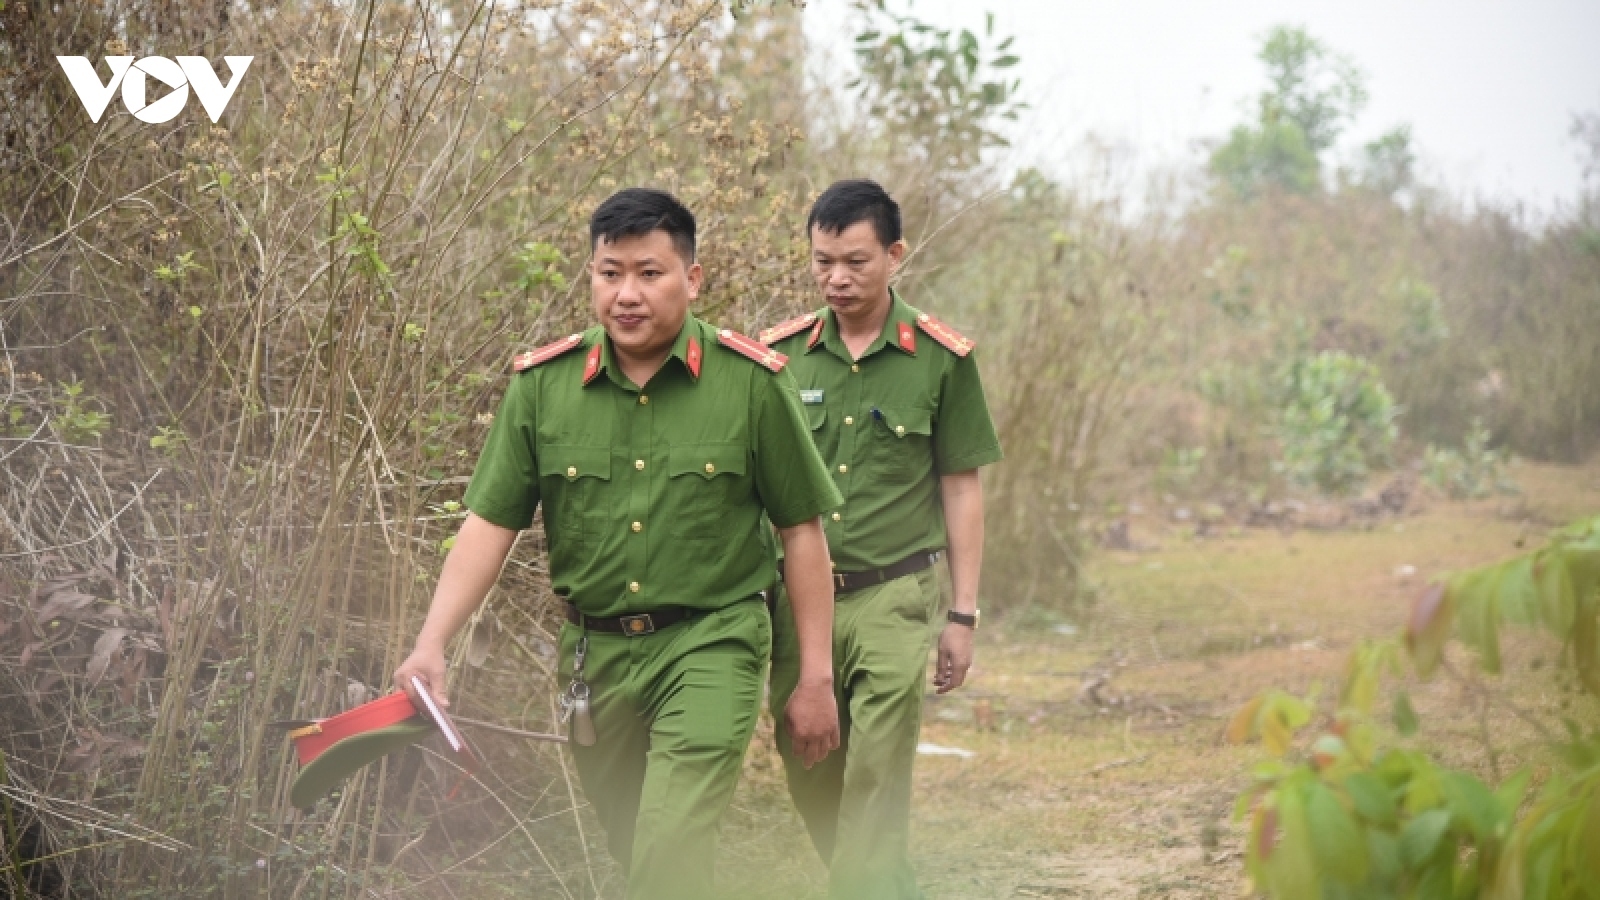 Chuyện về Trung úy Thào A Khư - 1 trong 10 gương mặt trẻ tiêu biểu Việt Nam năm 2022